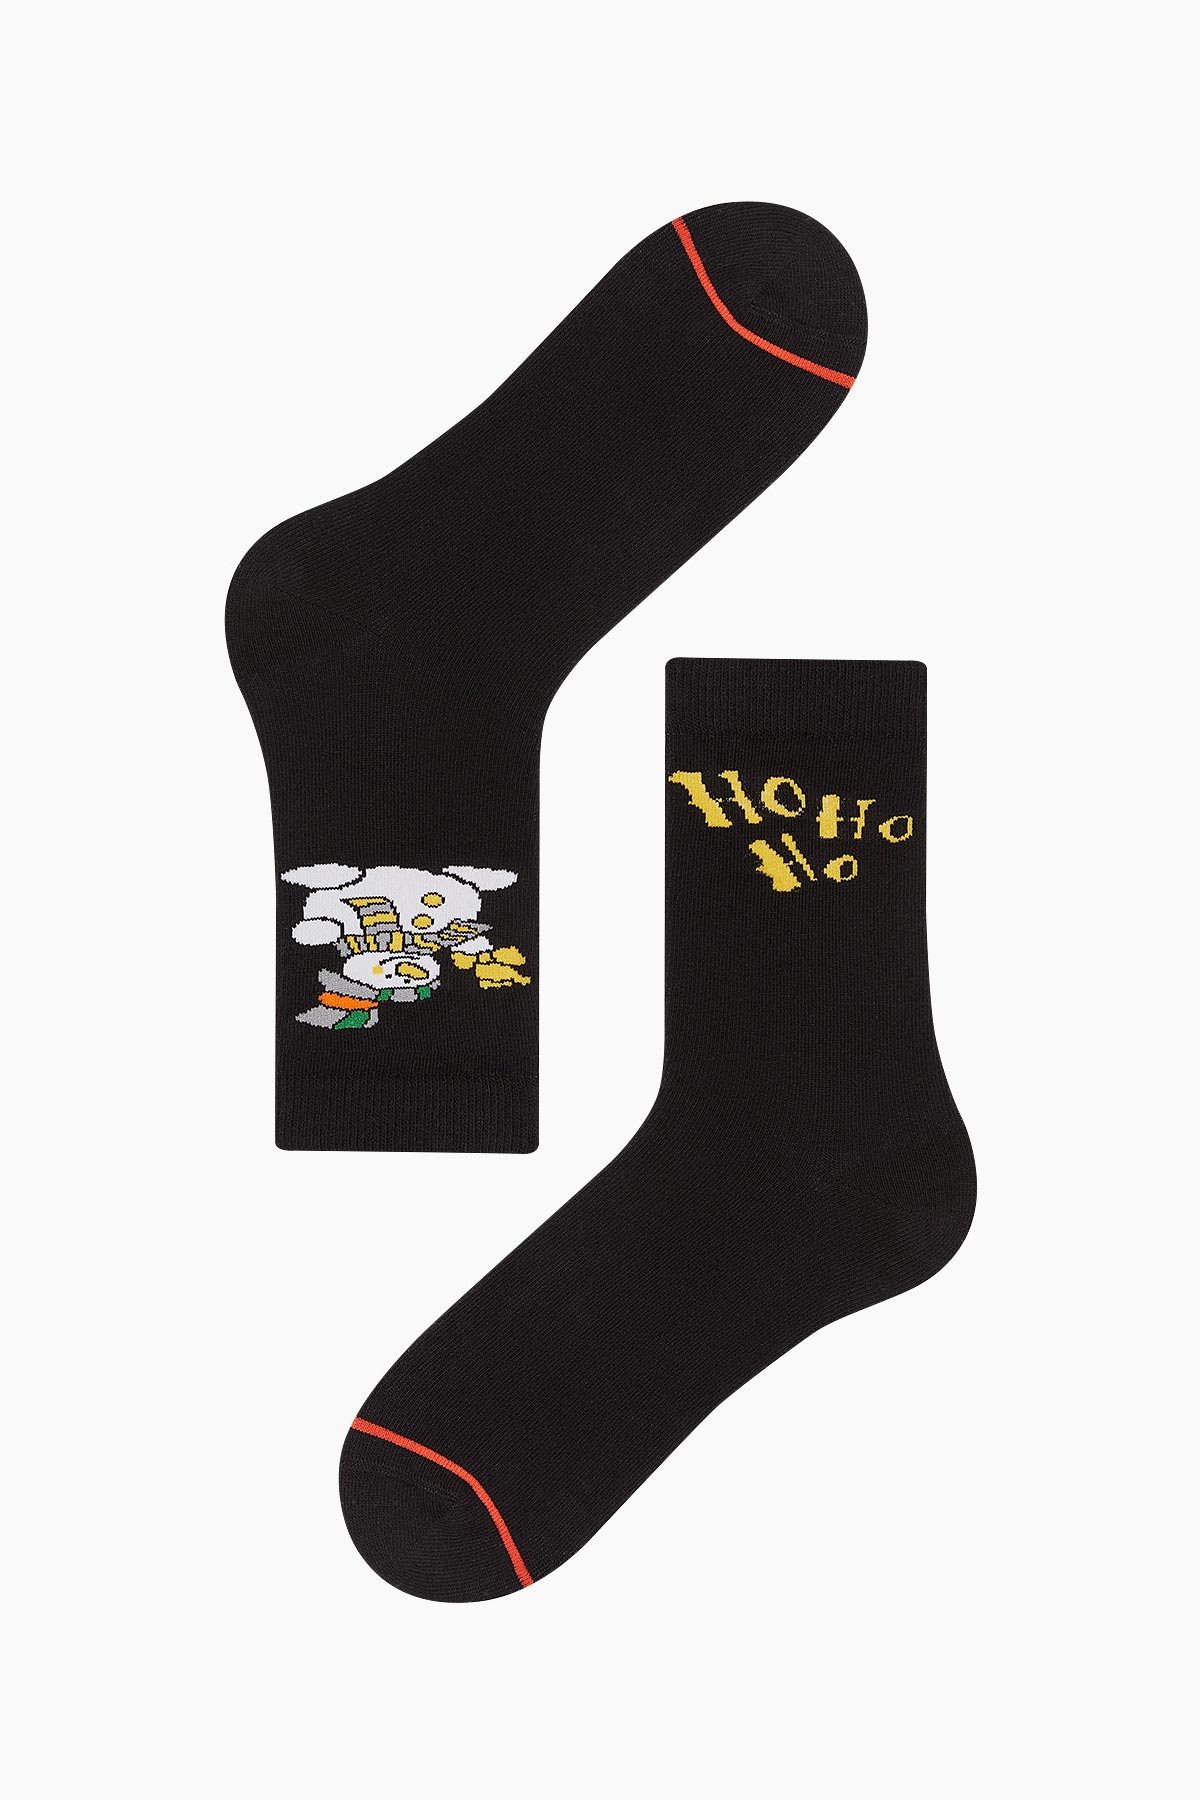 Bross - Bross Ho Ho Printed Unisex Christmas Socks